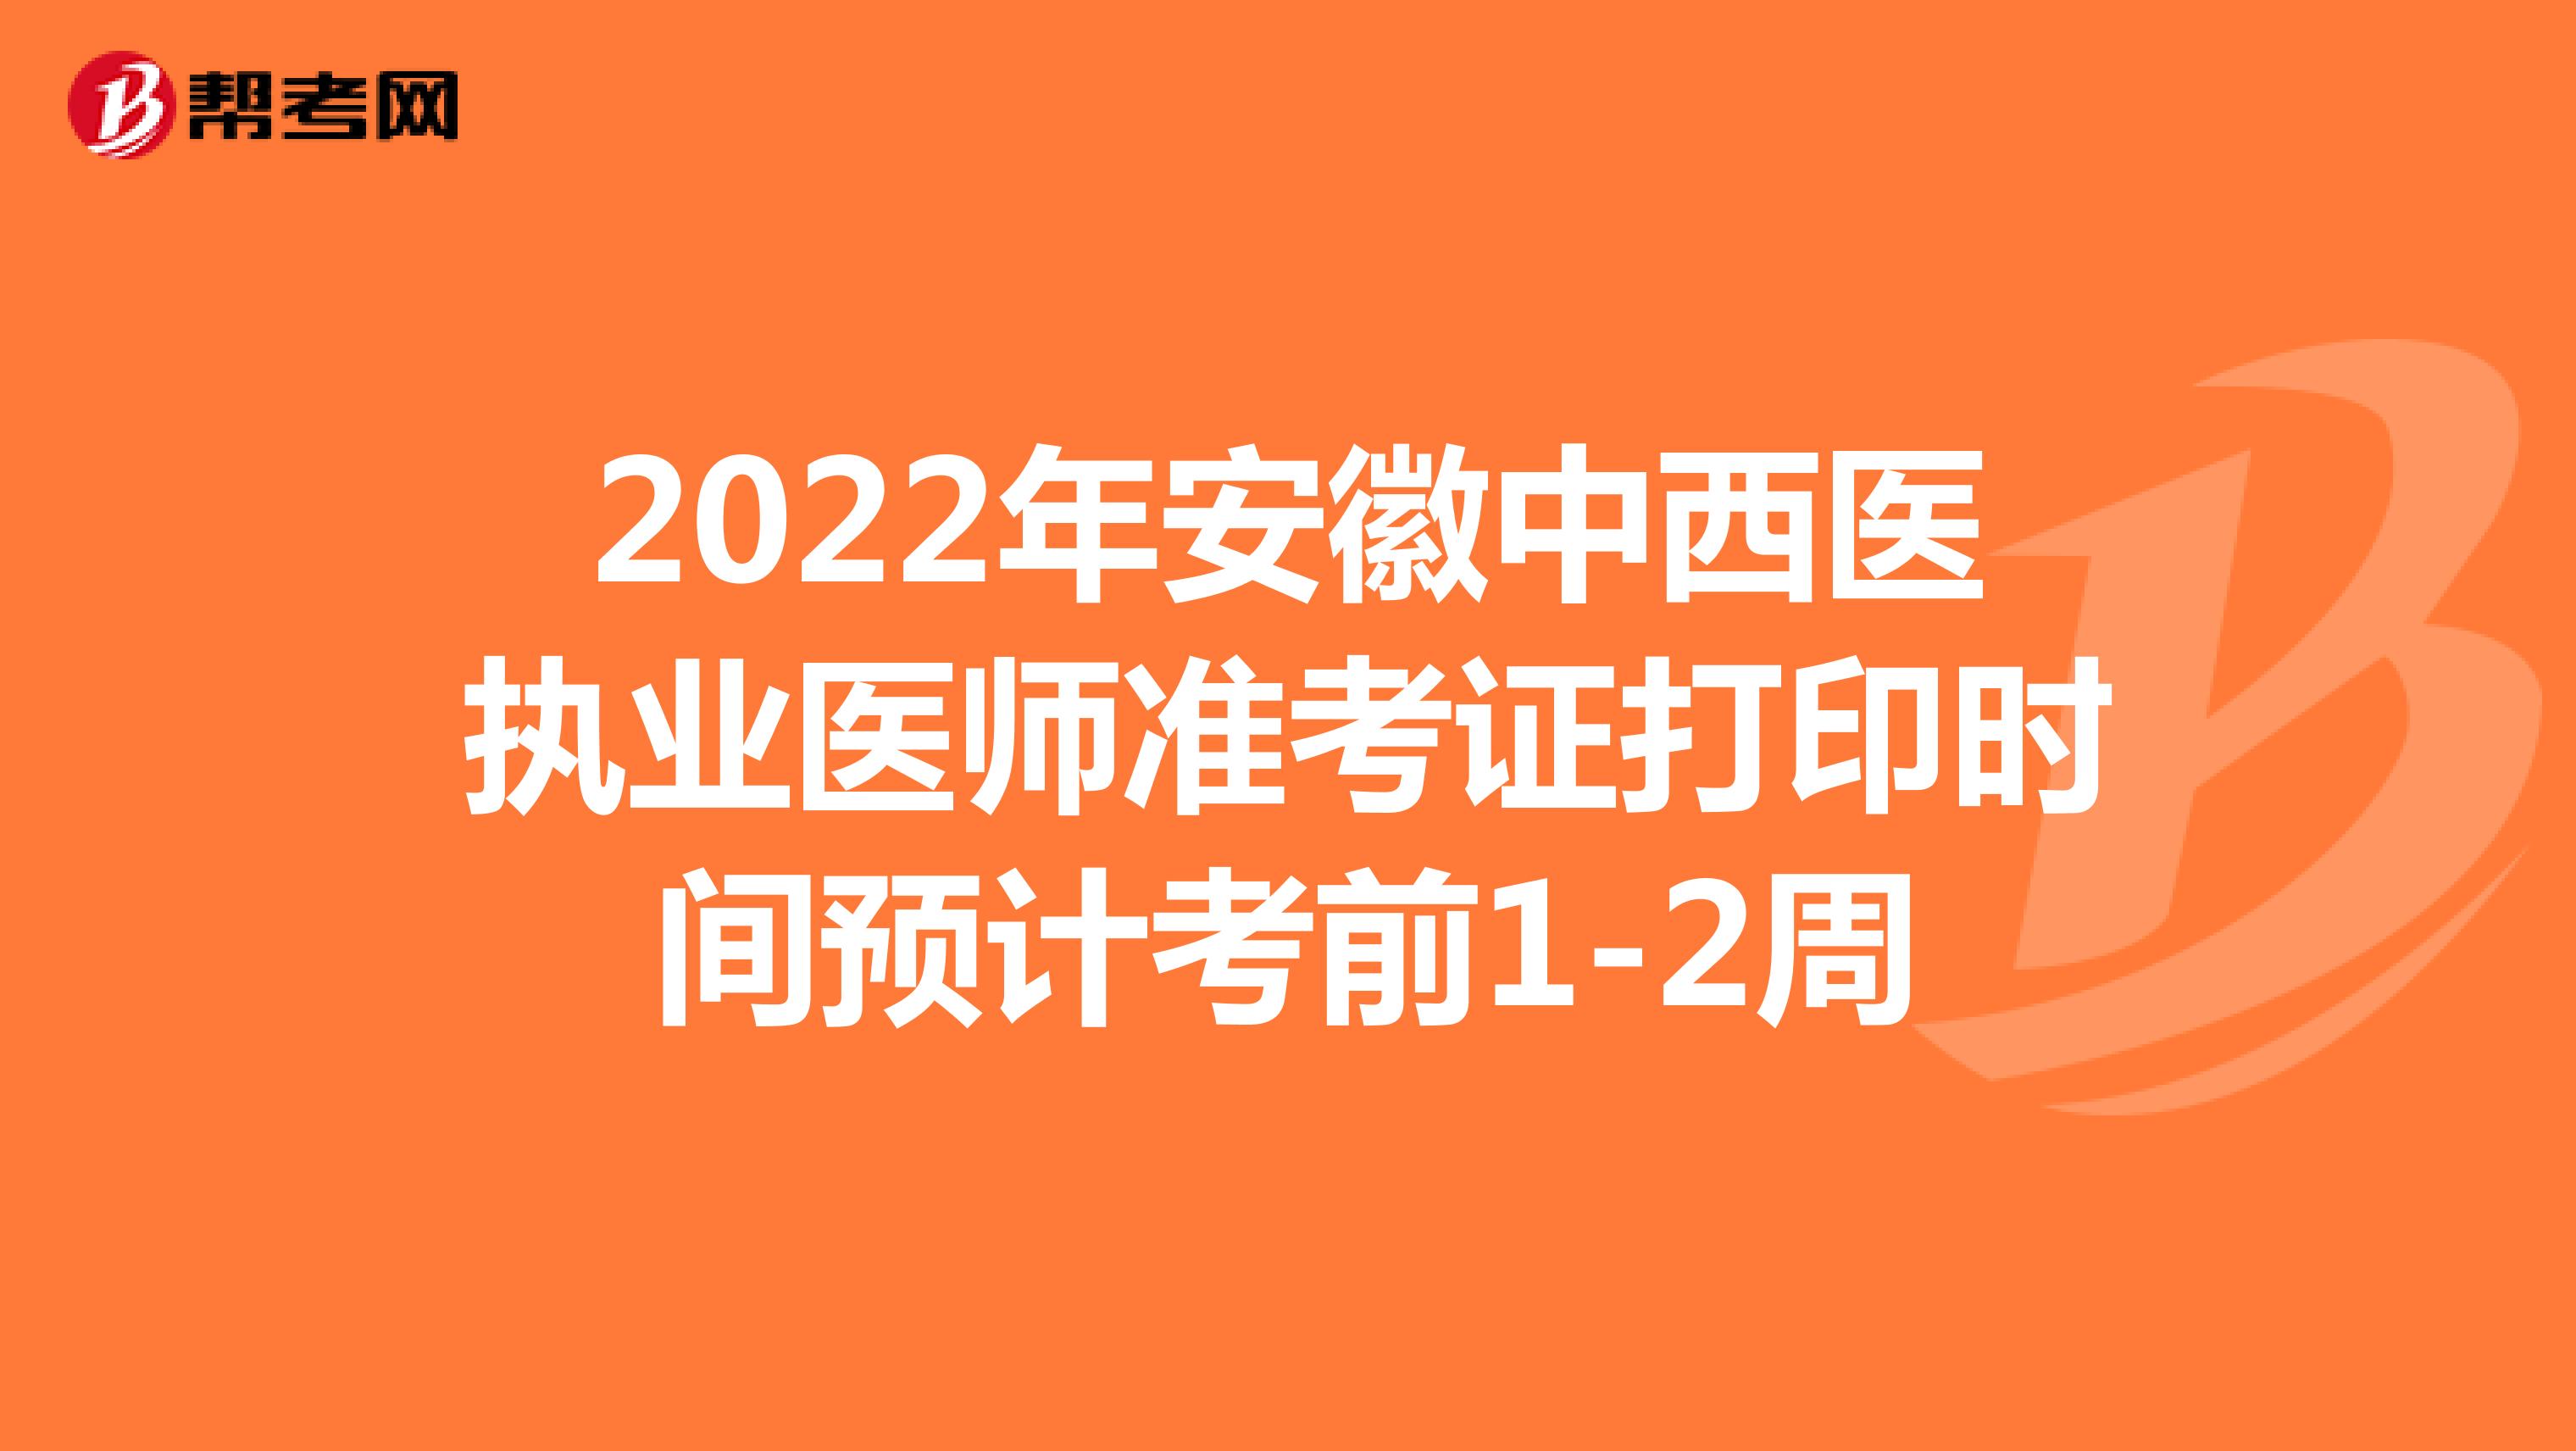 2022年安徽中西医执业医师准考证打印时间预计考前1-2周